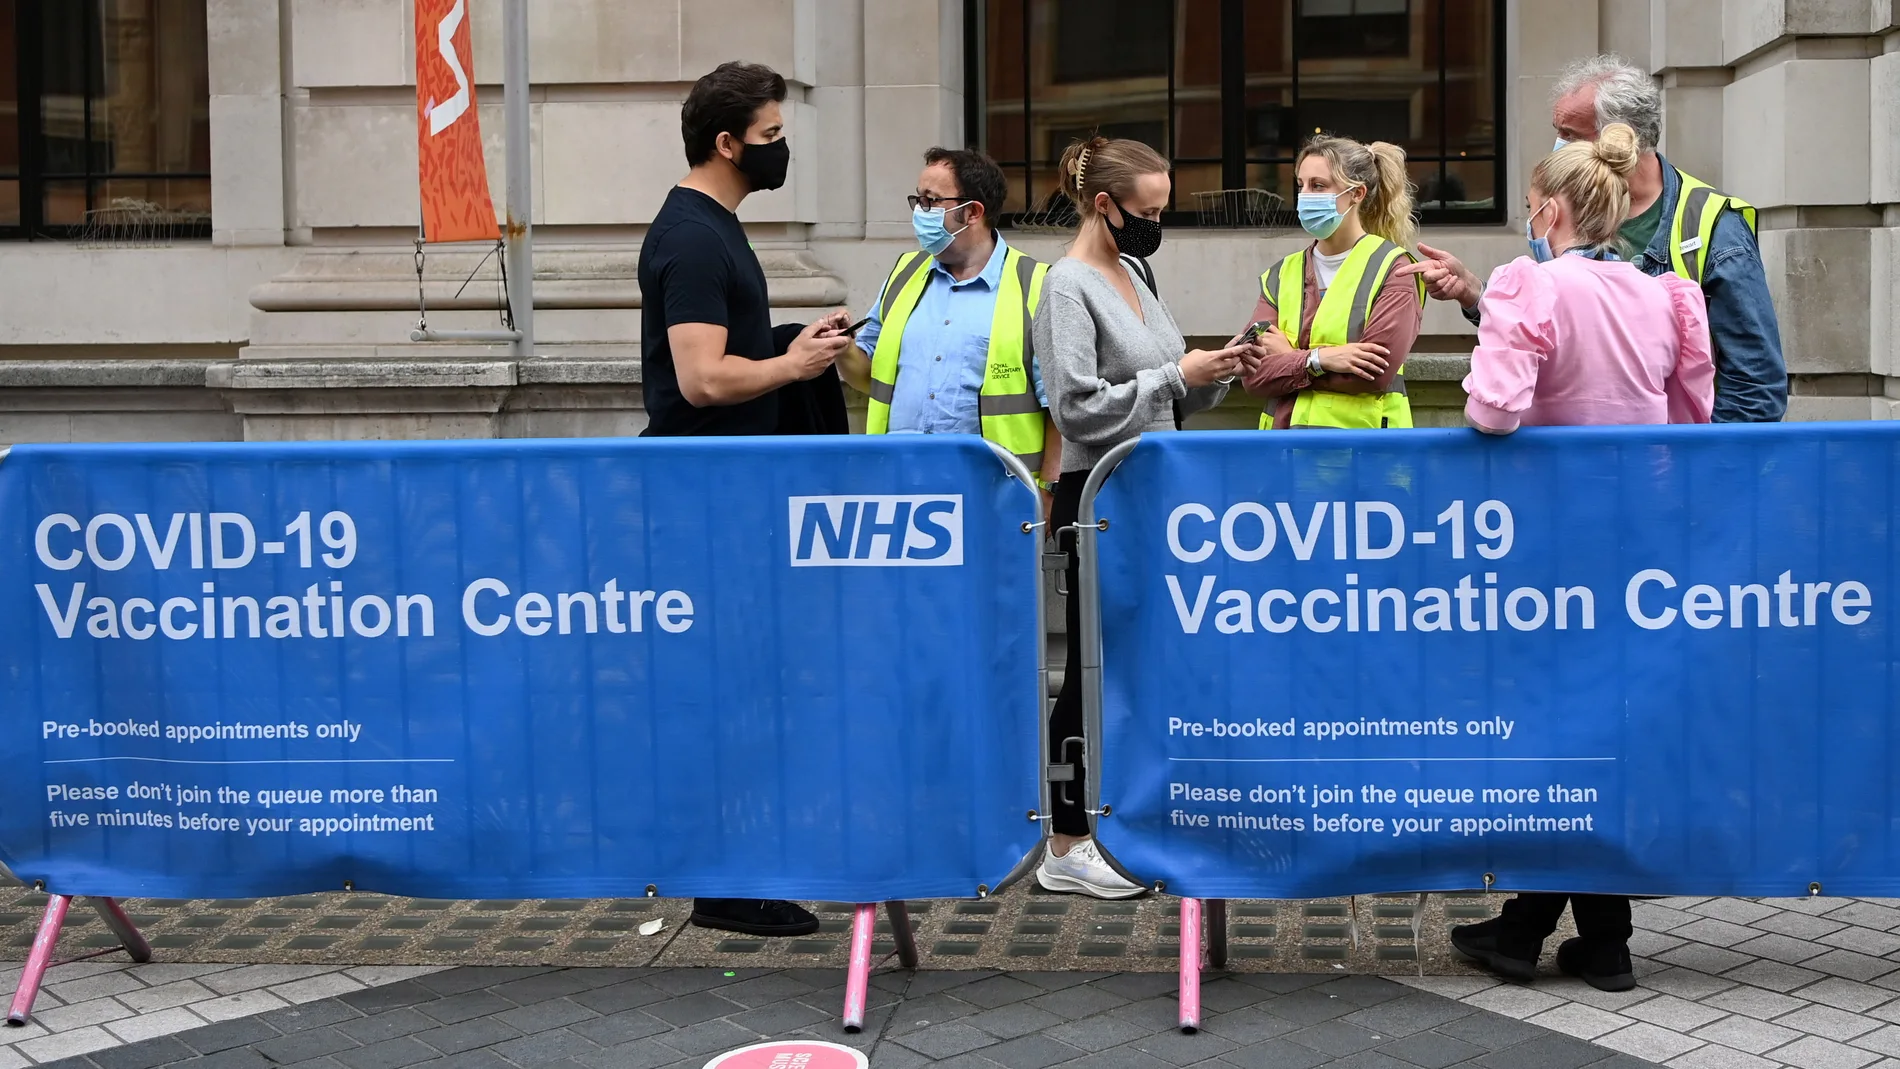 Cntro de vacunación Covid-19 en Londres